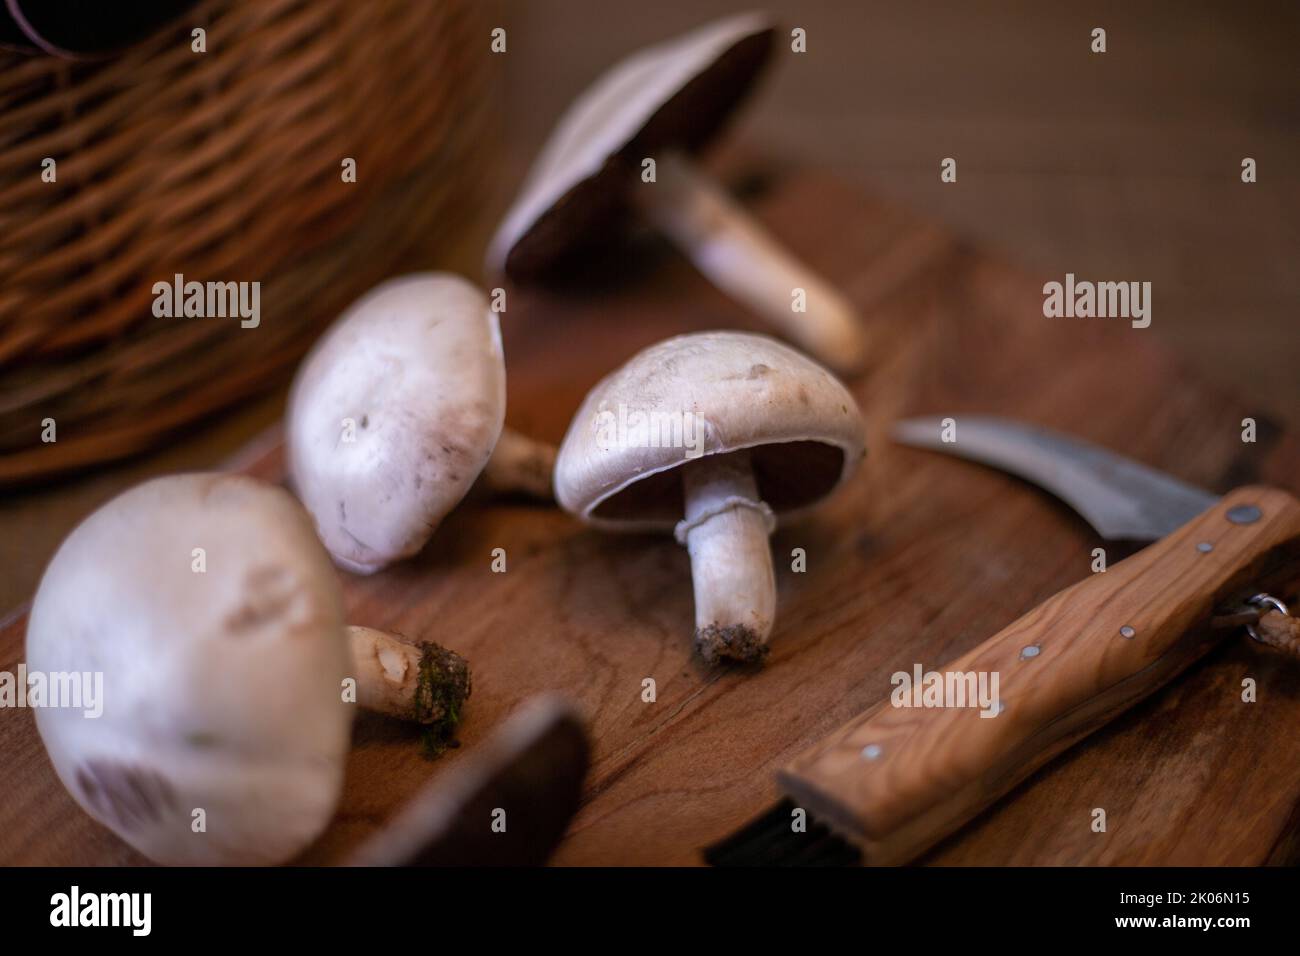 Field mushroom on a wooden board Stock Photo